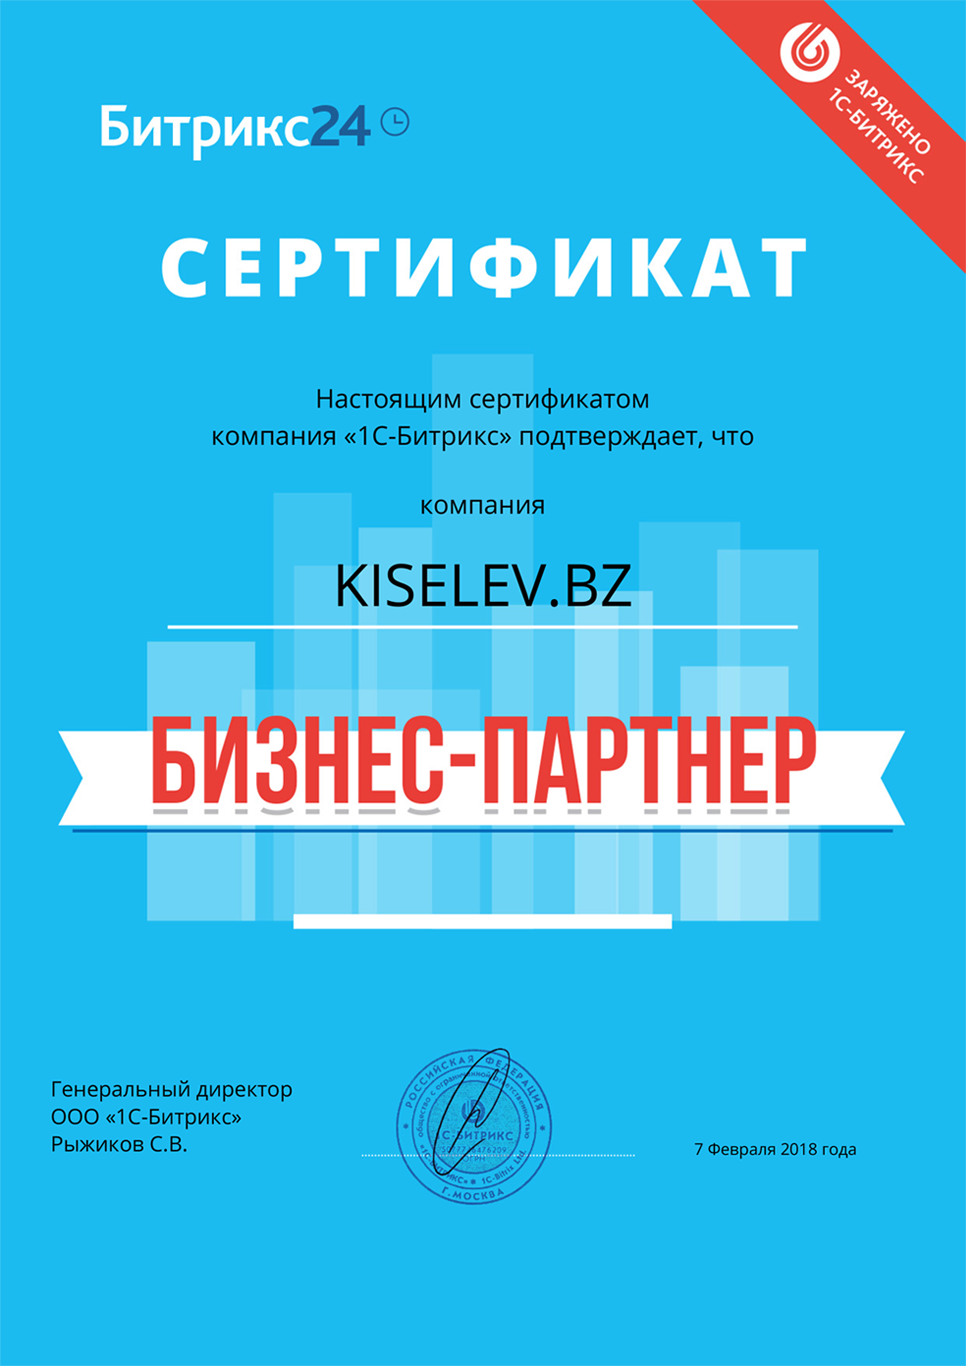 Сертификат партнёра по АМОСРМ в Усолье